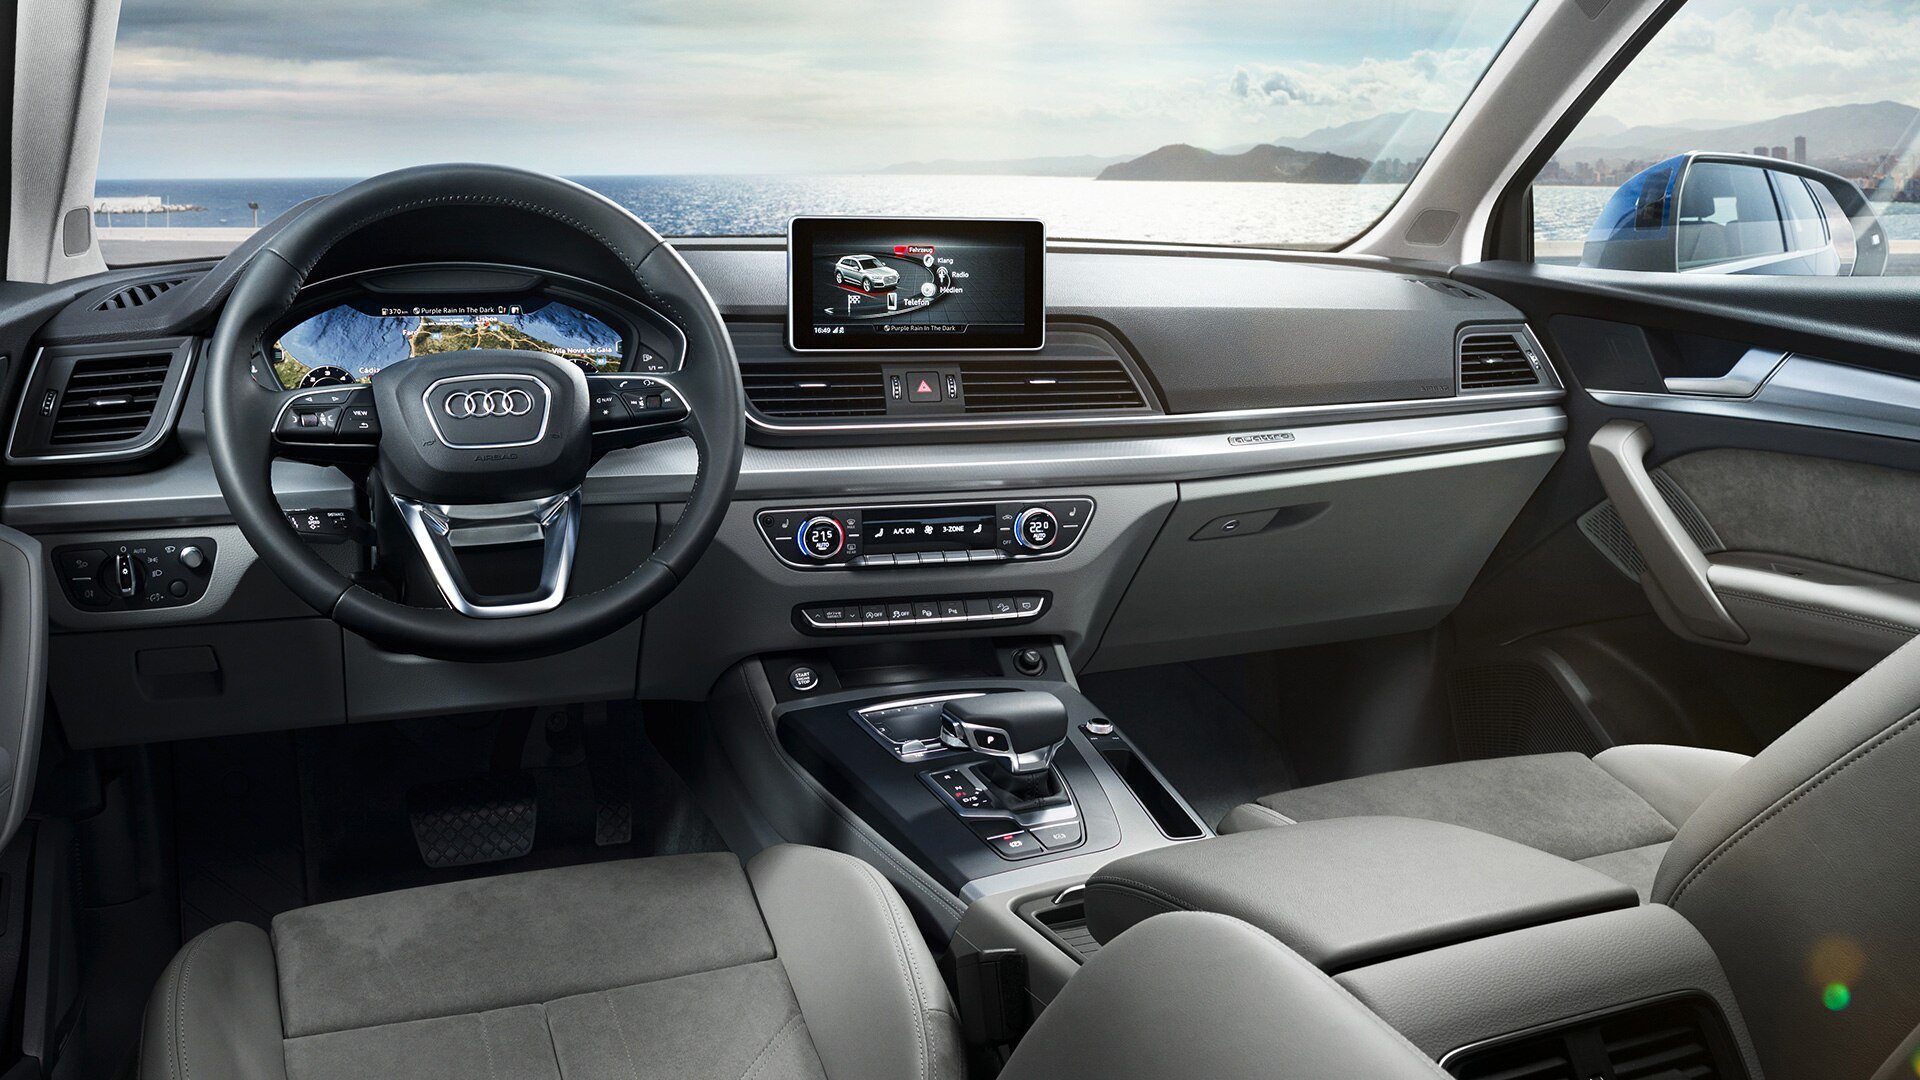 Audi Q5 interior - Cockpit